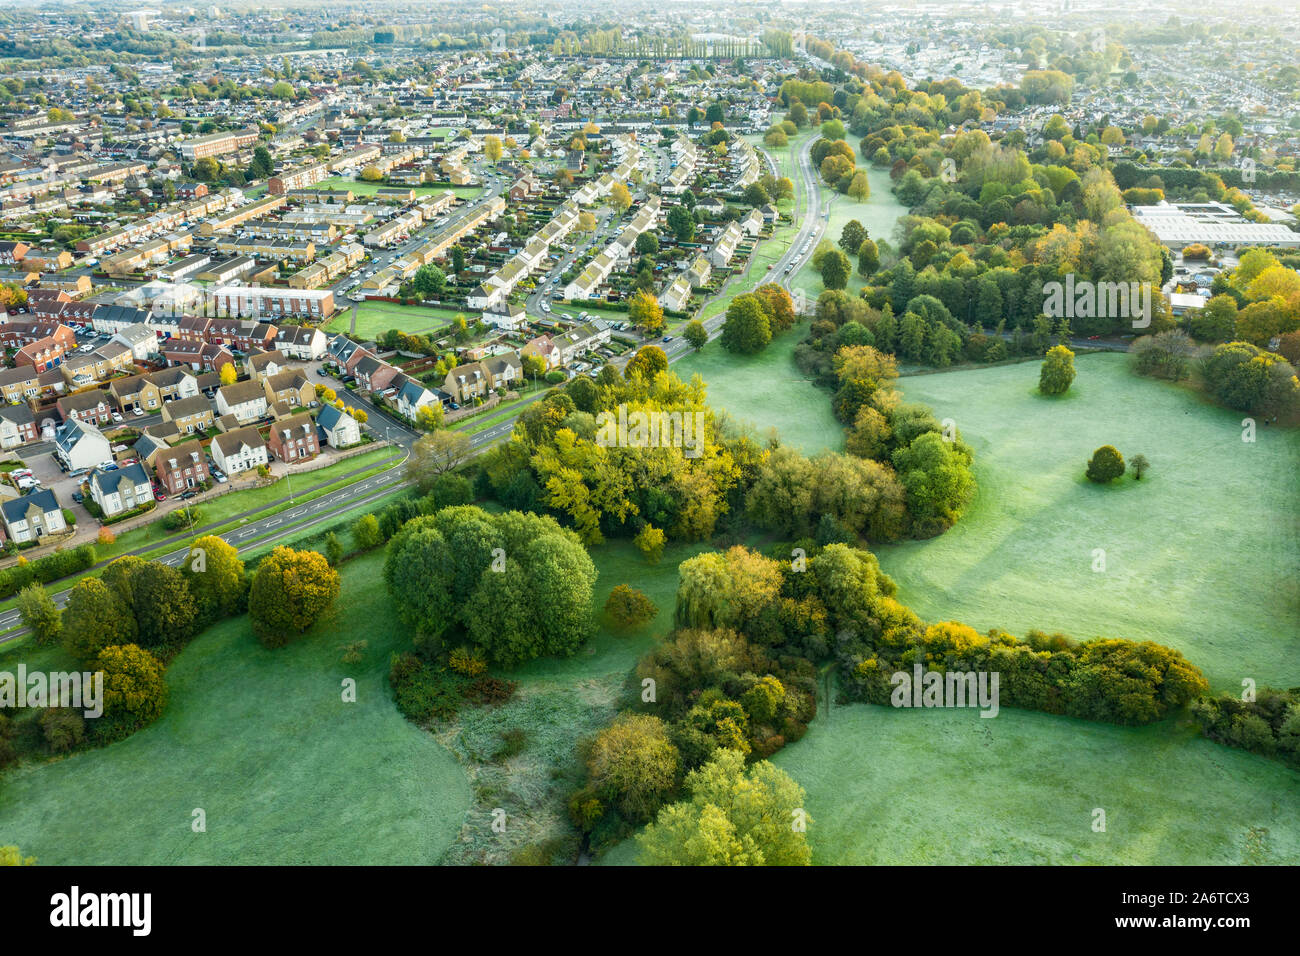 SWINDON, UK - 26. Oktober 2019: Luftaufnahme der jetzt stillgelegten Par 3 Golfplatz bei Moredon in Swindon, Wiltshire Stockfoto